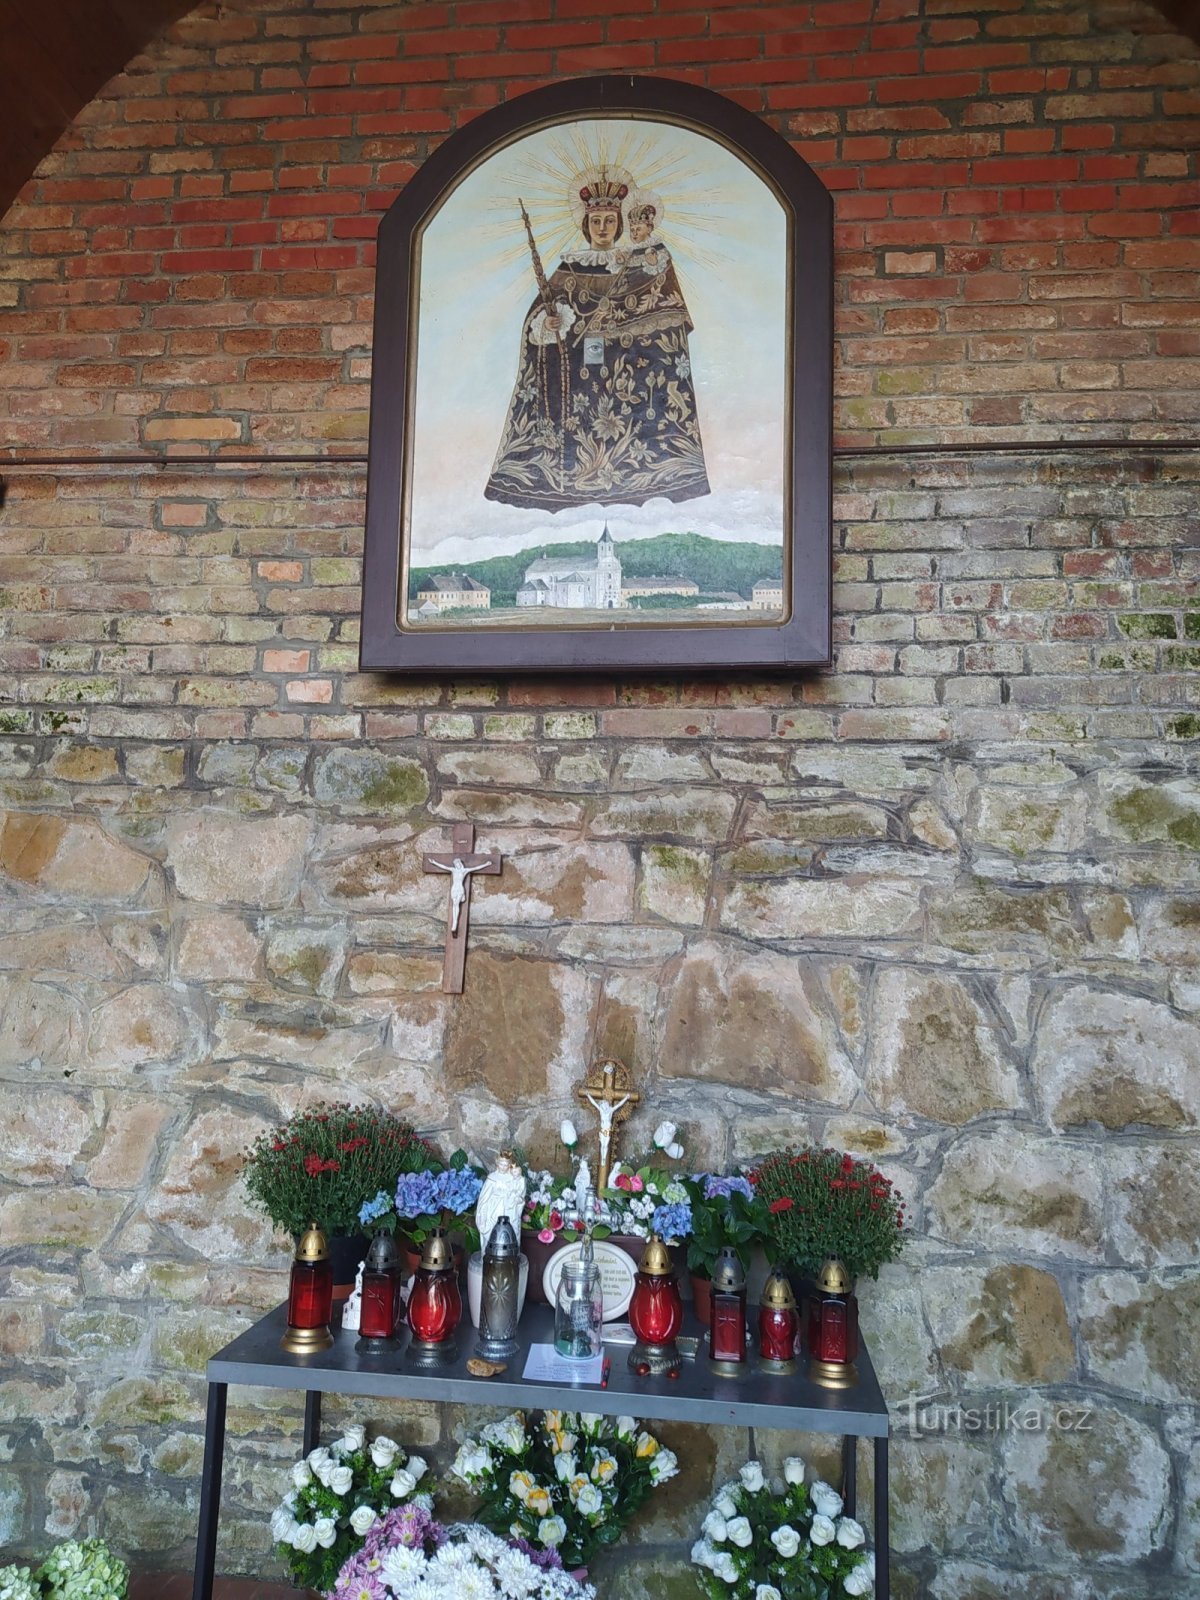 En la iglesia original se colocó una estatua de la Virgen María Štípská, pero hoy,